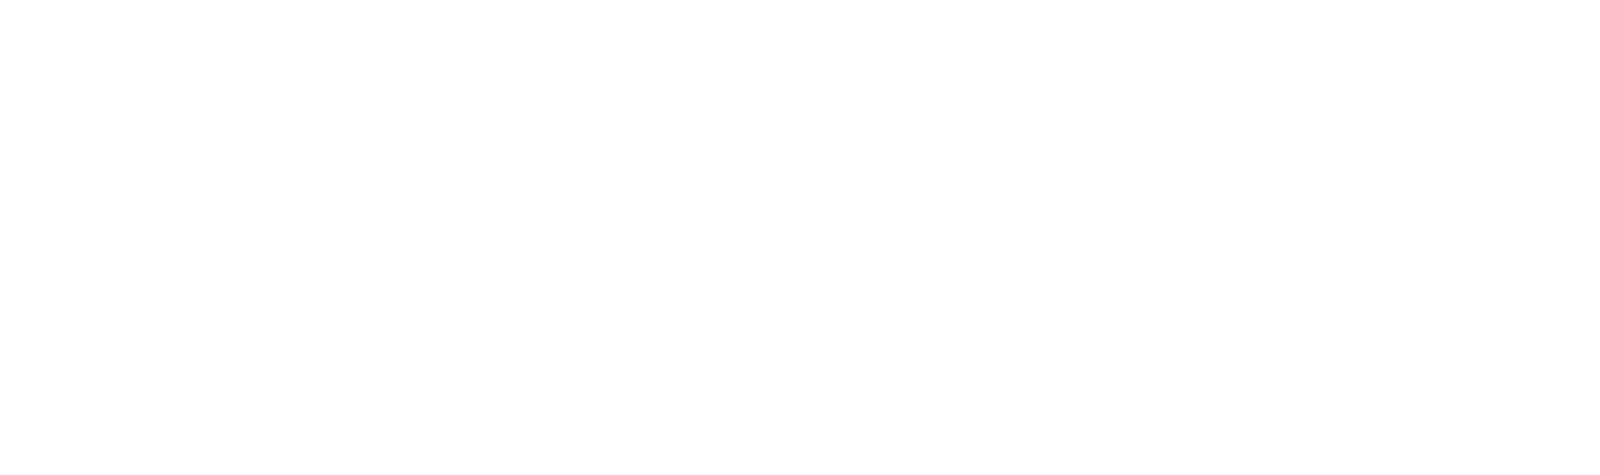 logo-fullwhite